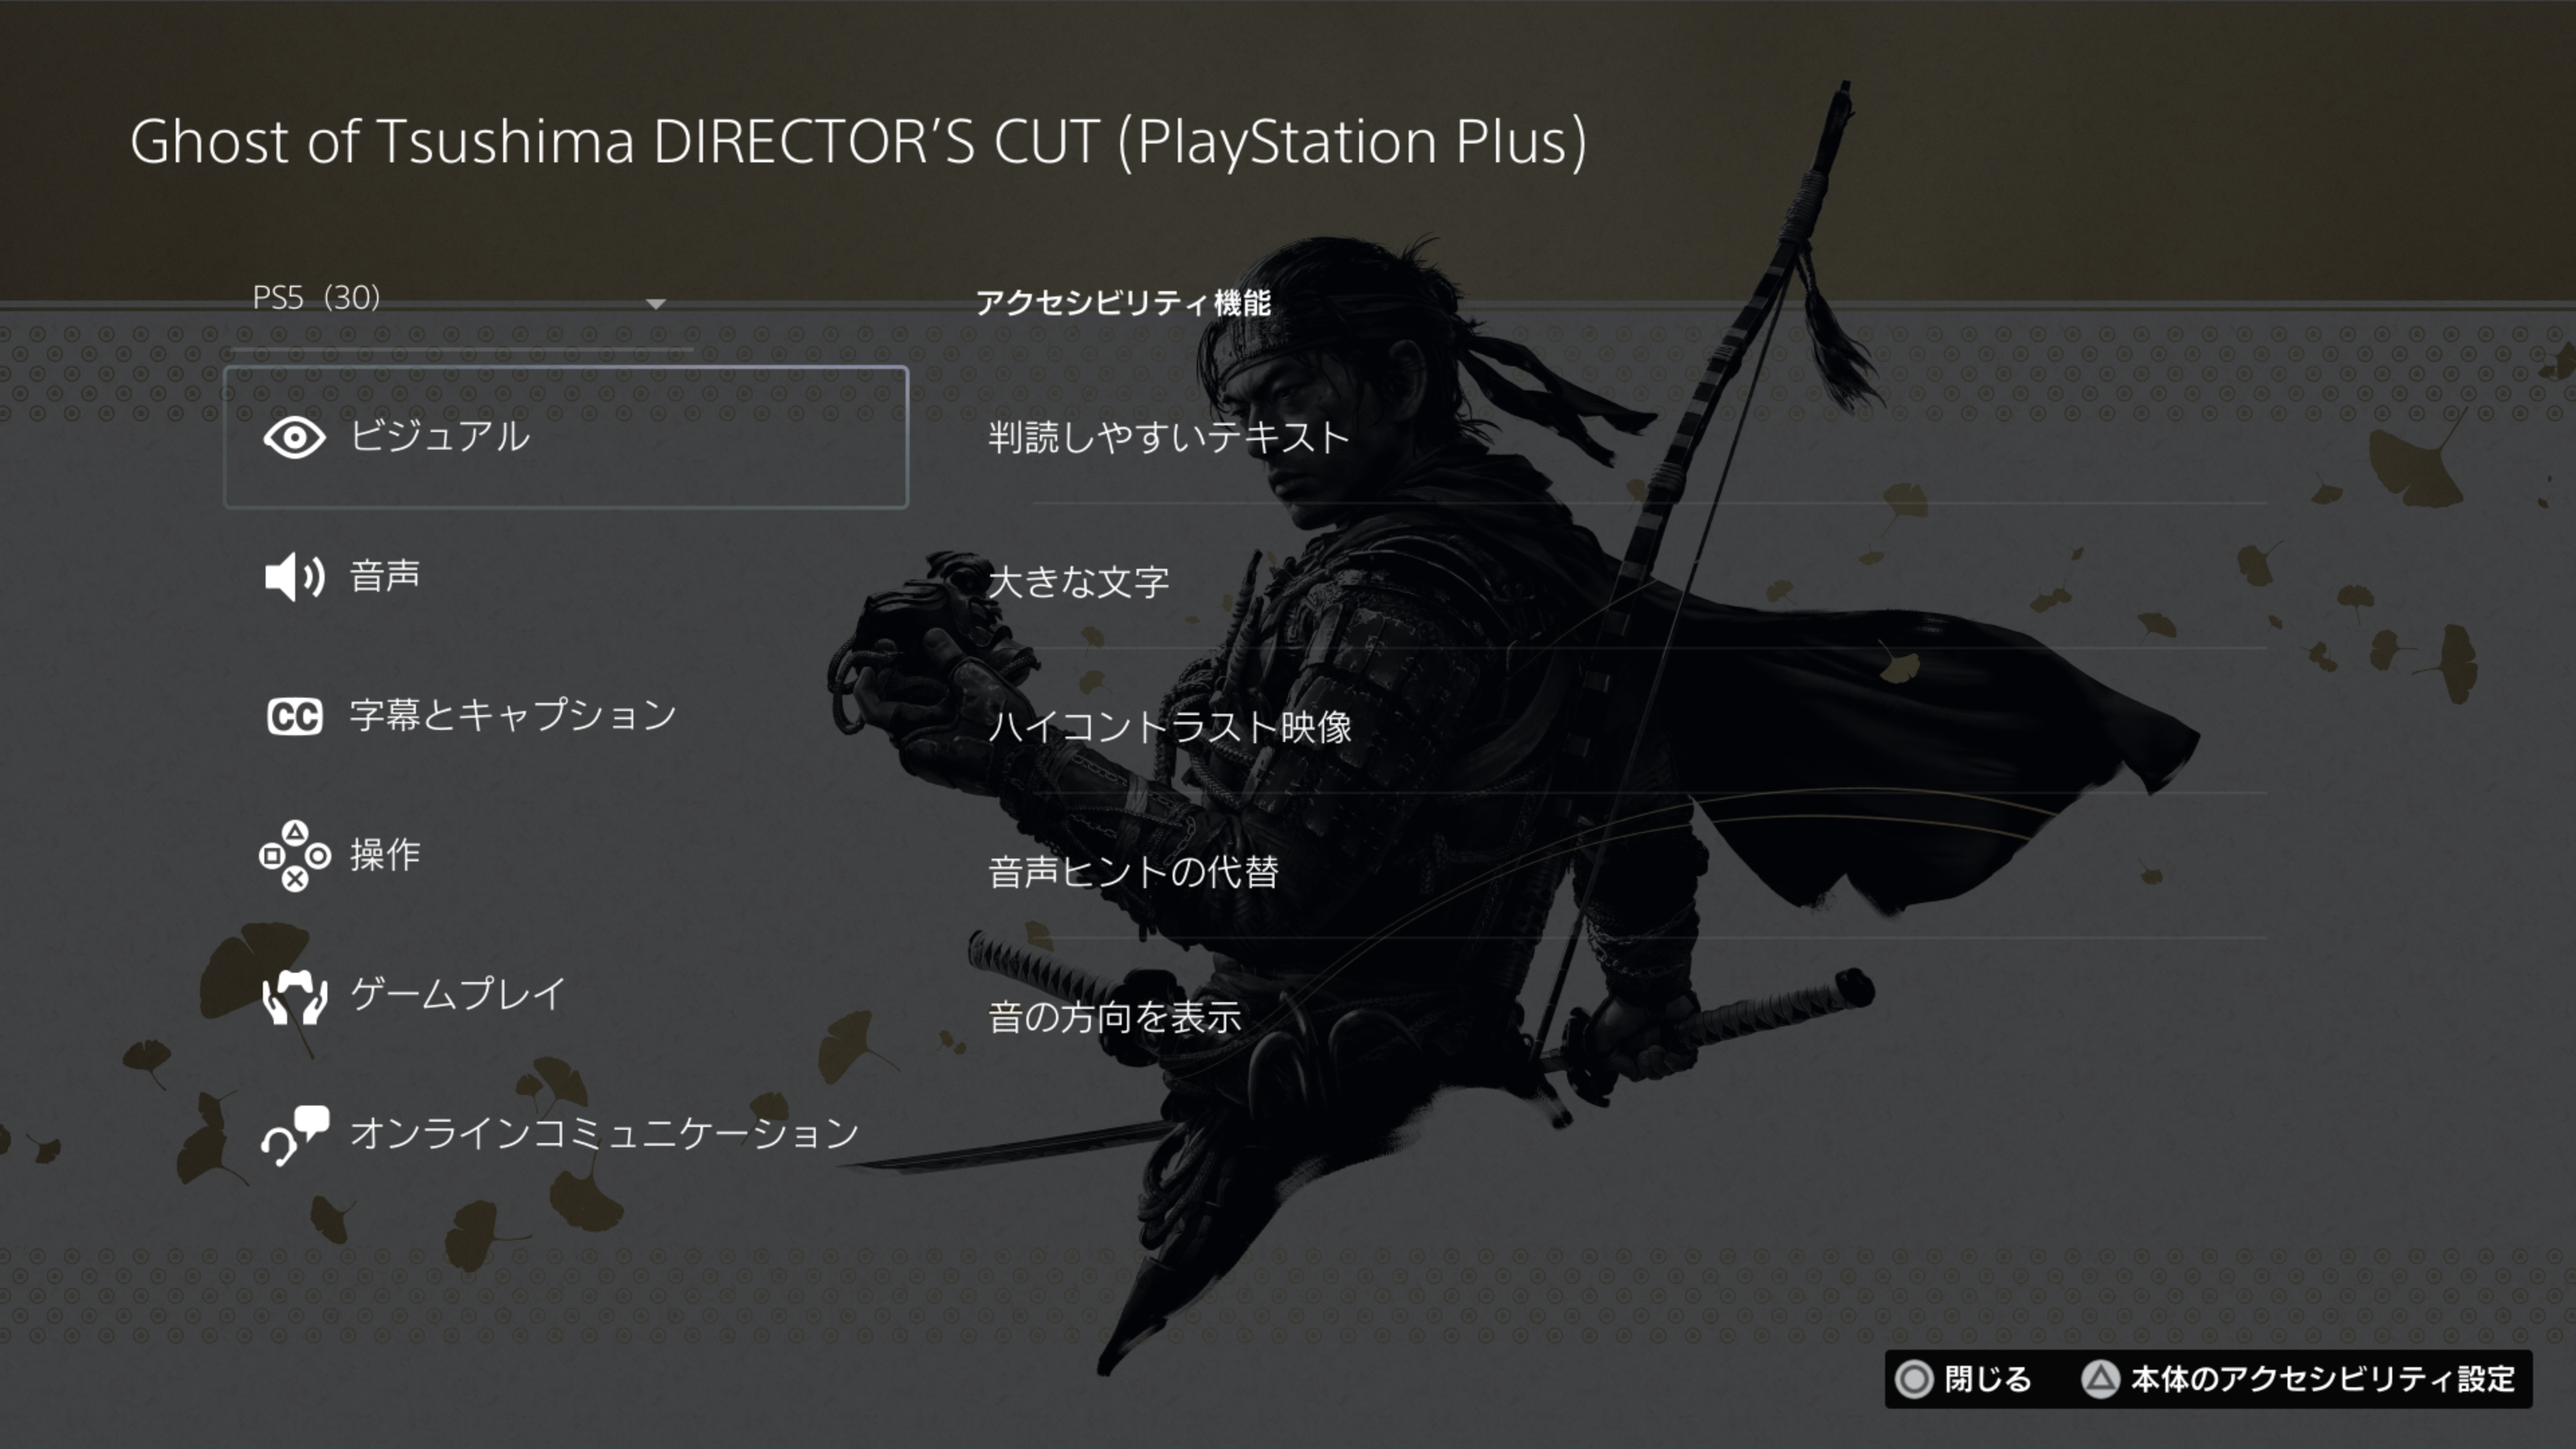  "『Ghost of Tsushima Director’s Cut』のゲームハブ画面にて、アクセシビリティ タグの一覧を表示しているスクリーンショット。"